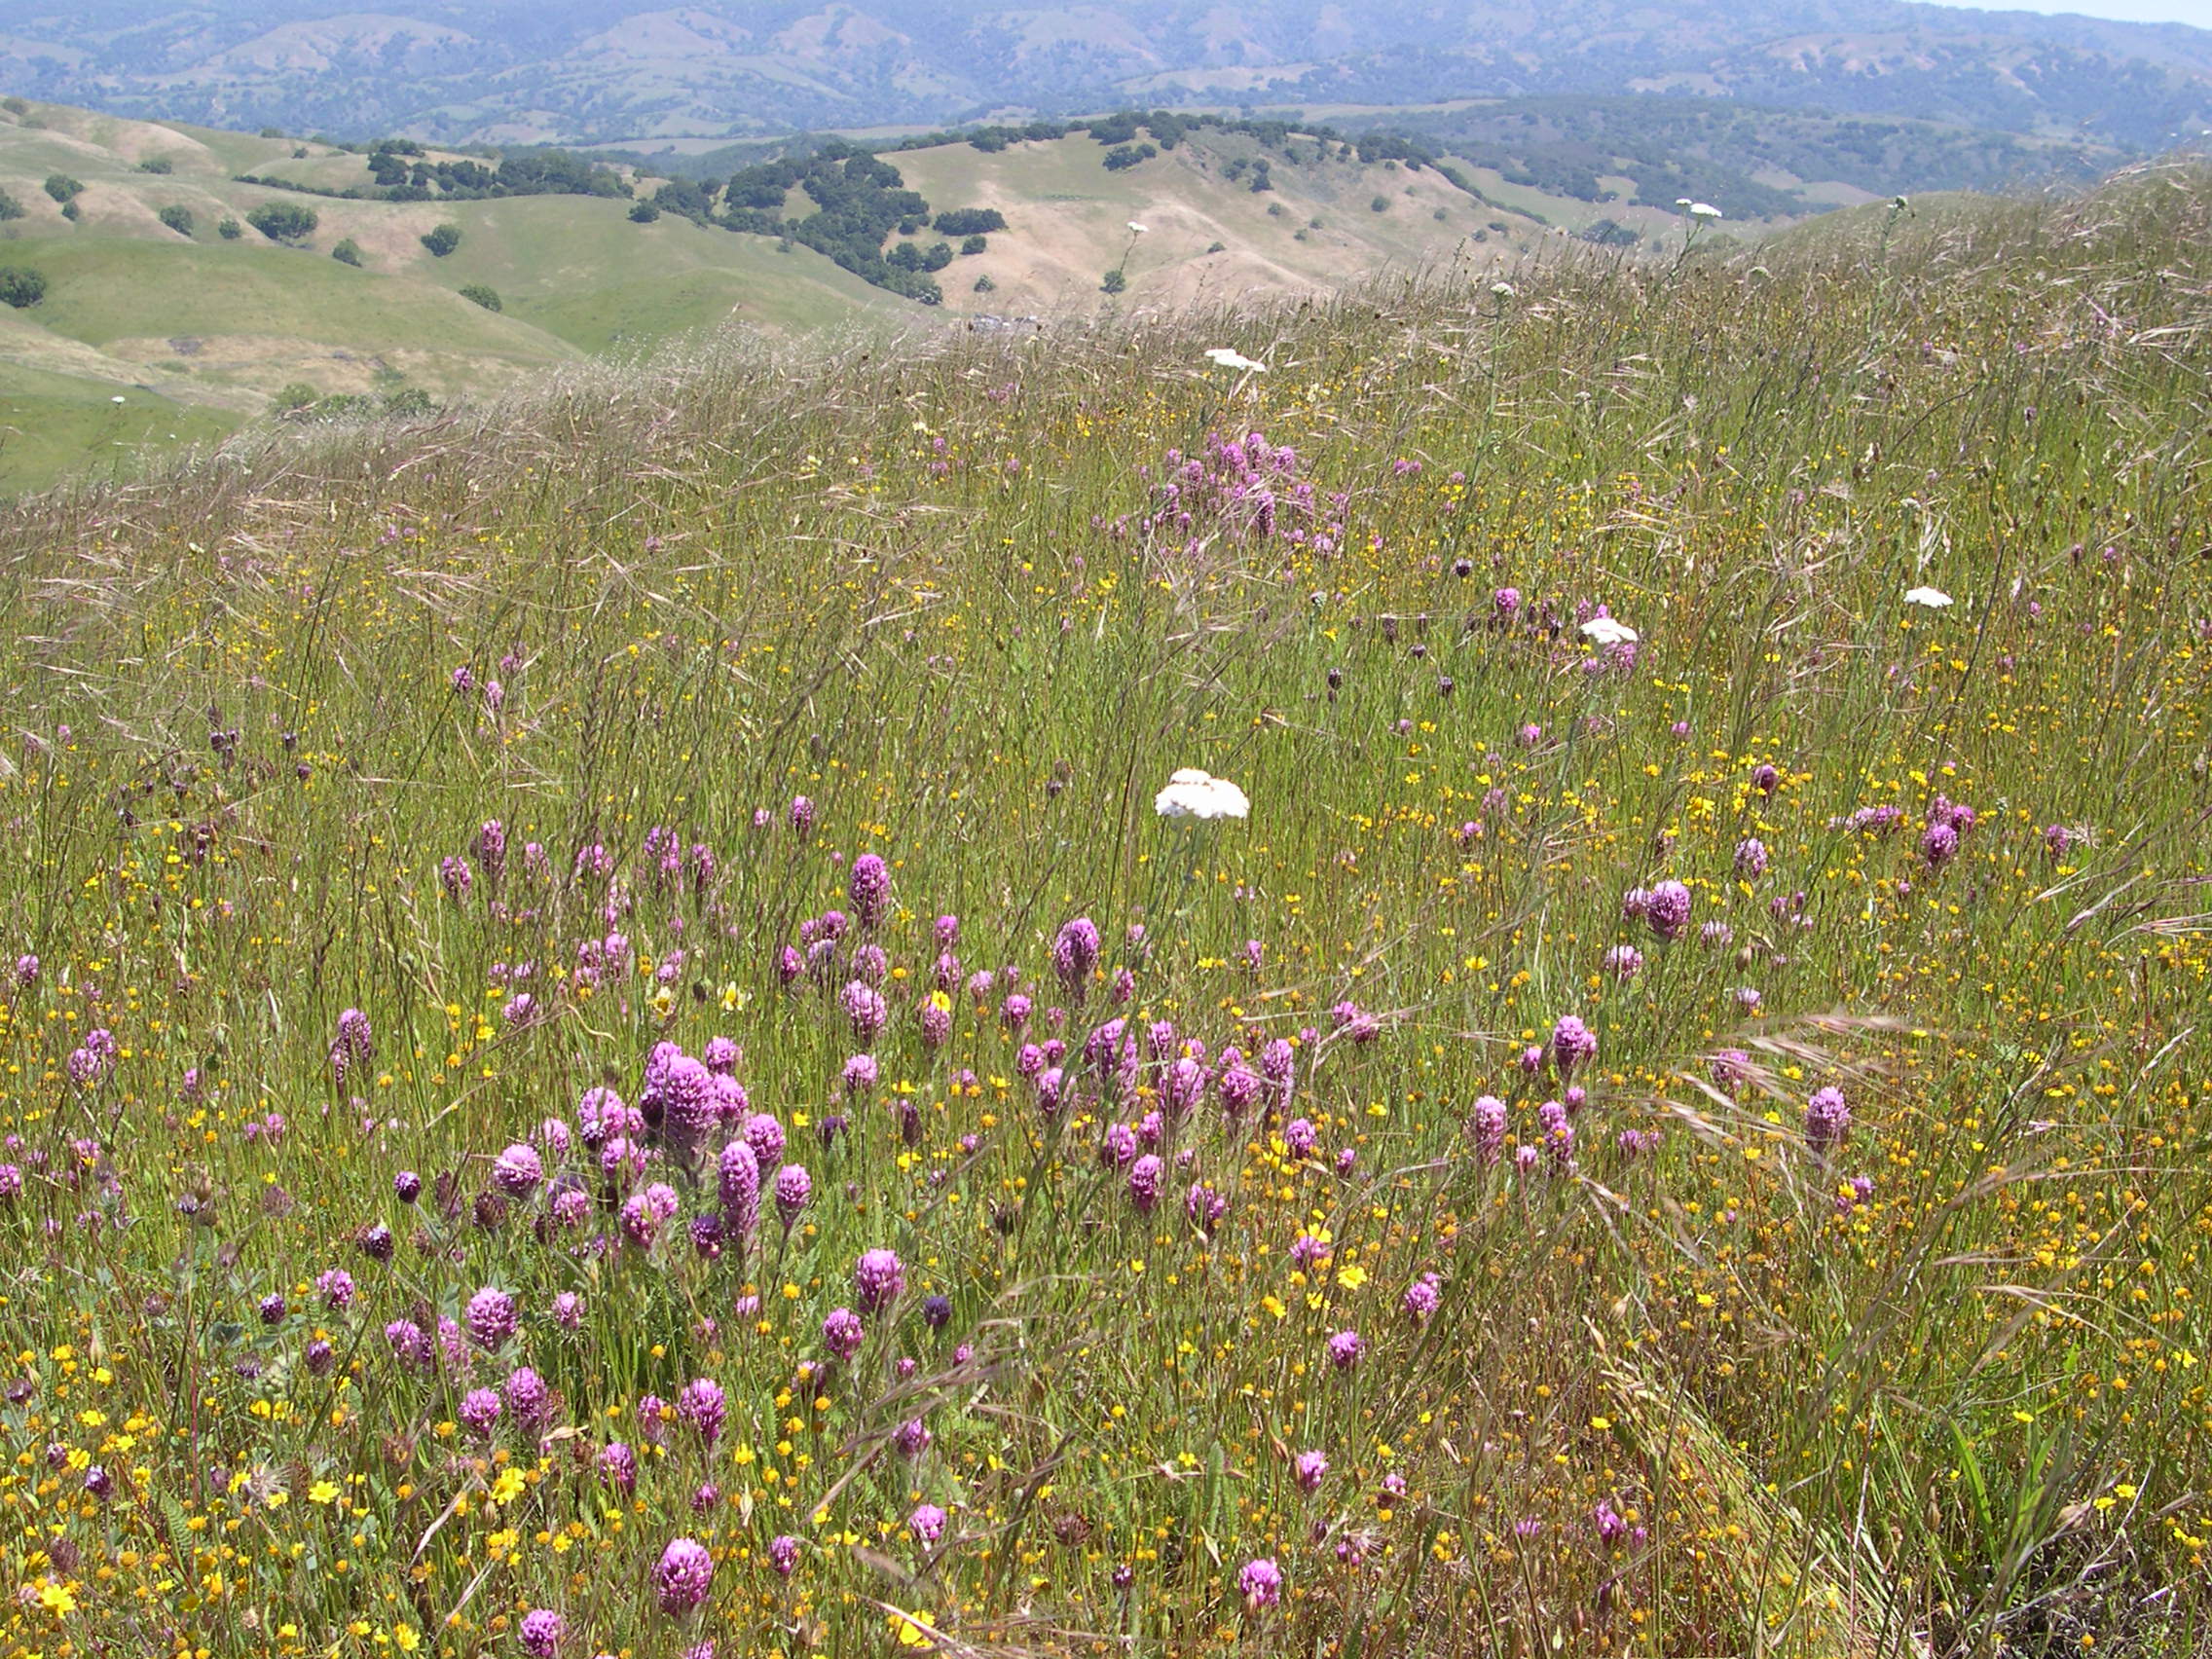 Serpentine grassland habitat, Coyote Ridge, Santa Clara County